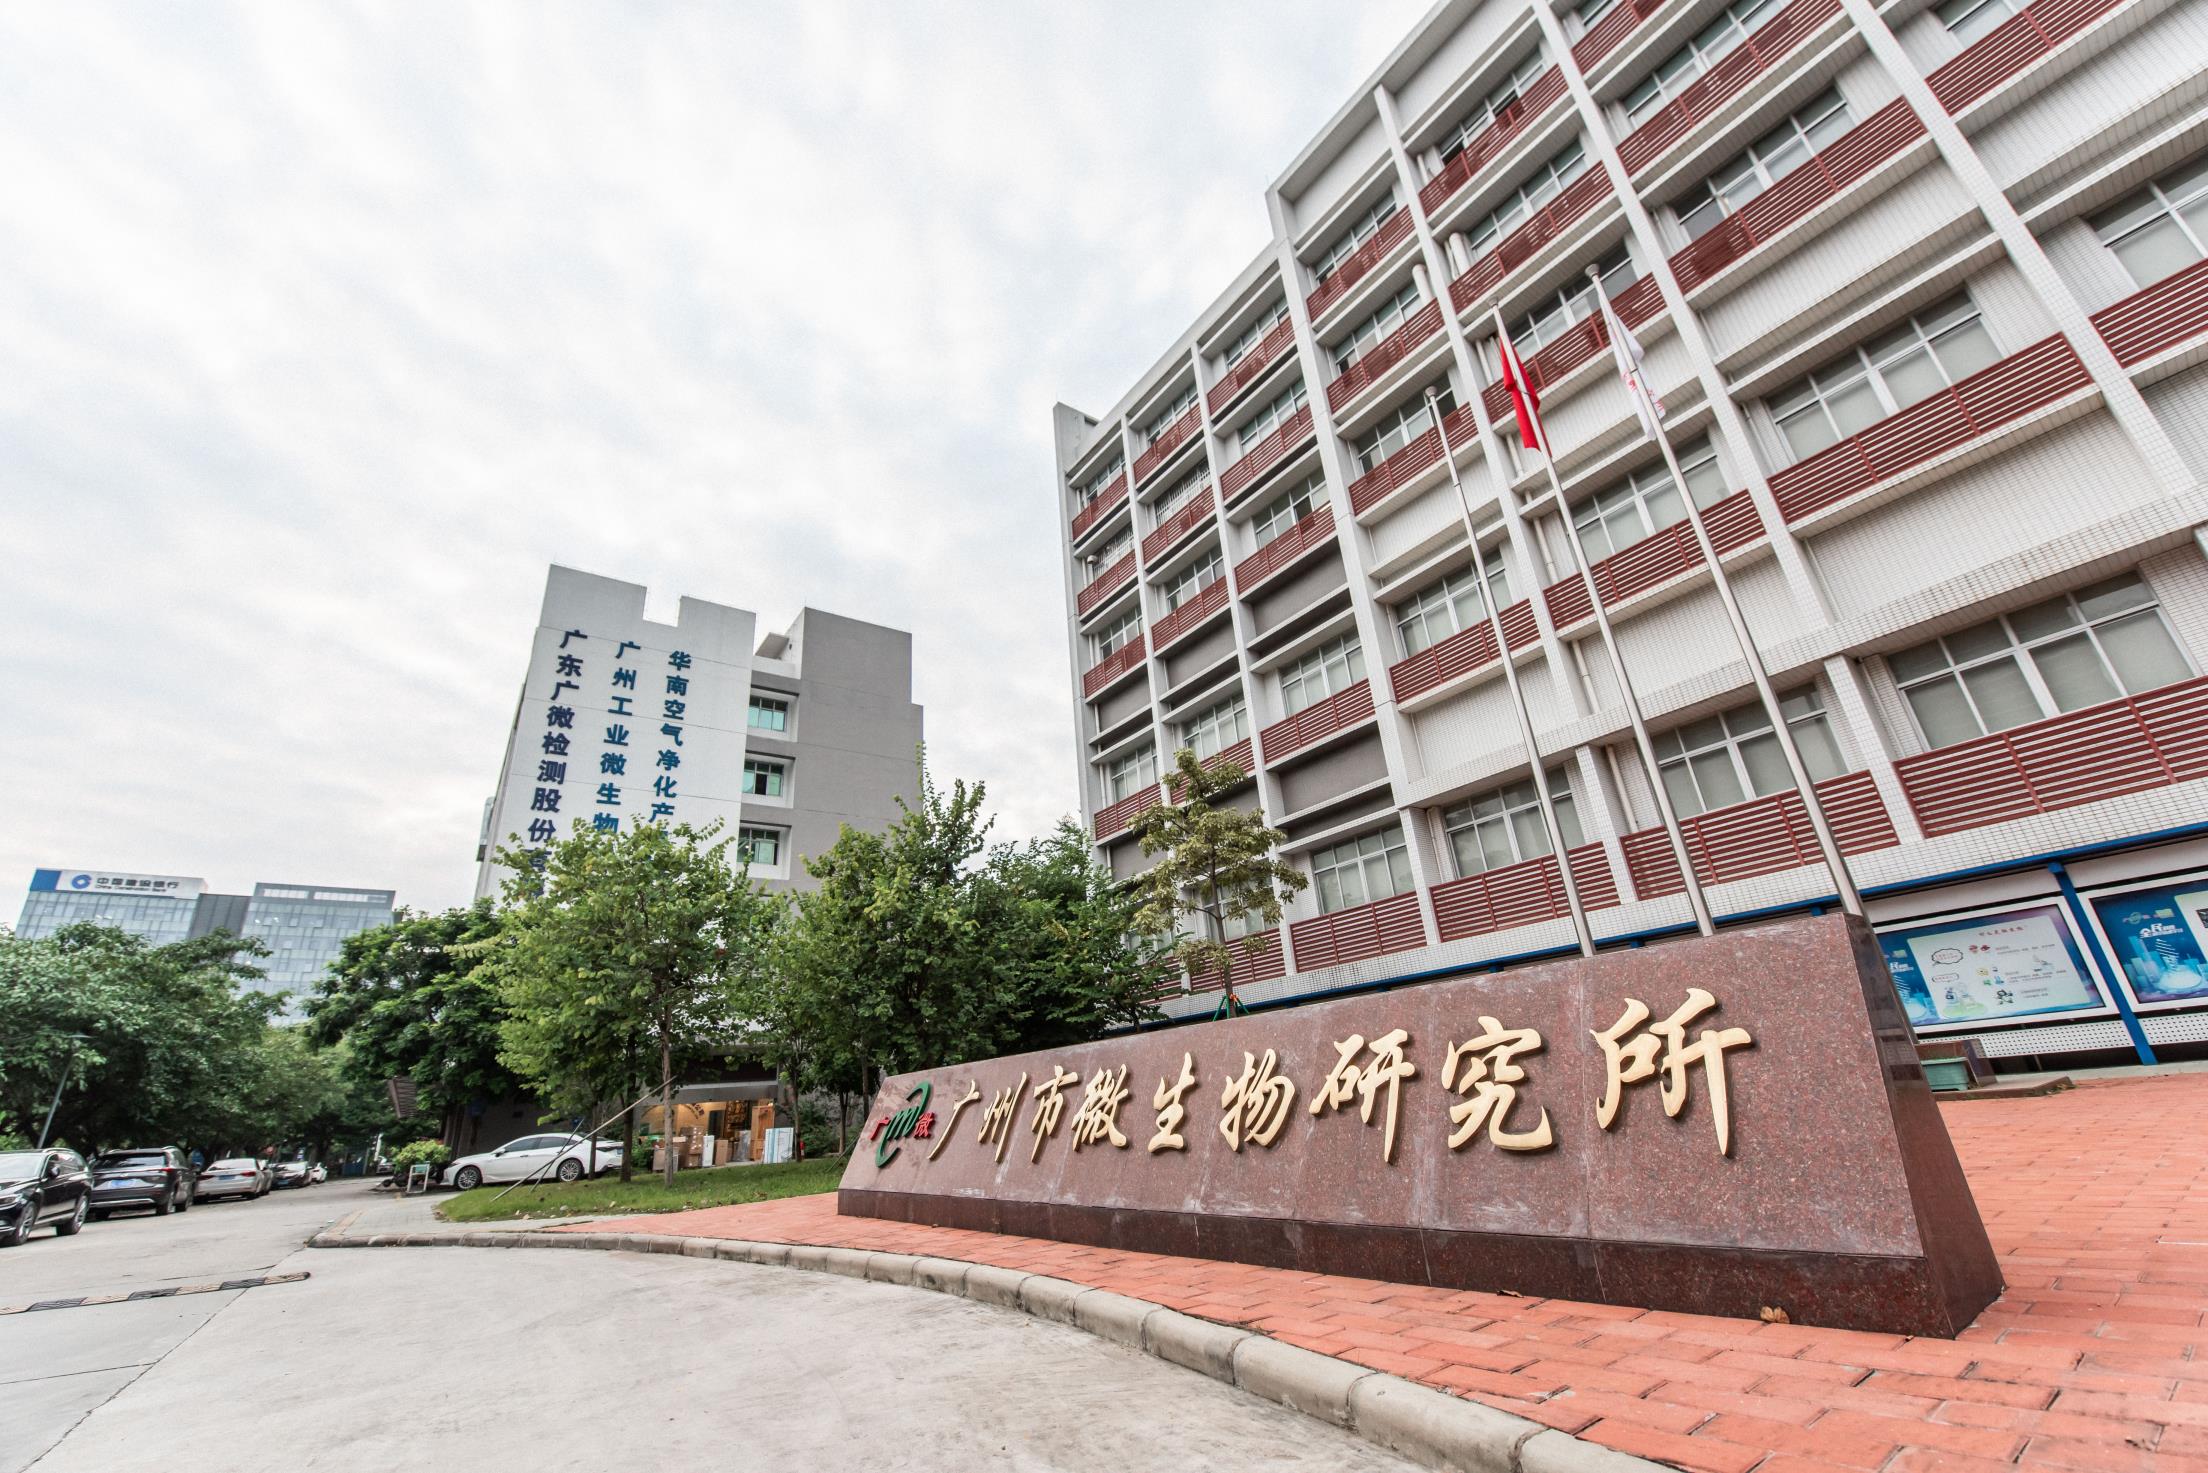 消字号卫生许可证检测 潮州消字号卫生许可证检测报告 广州市微生物研究所